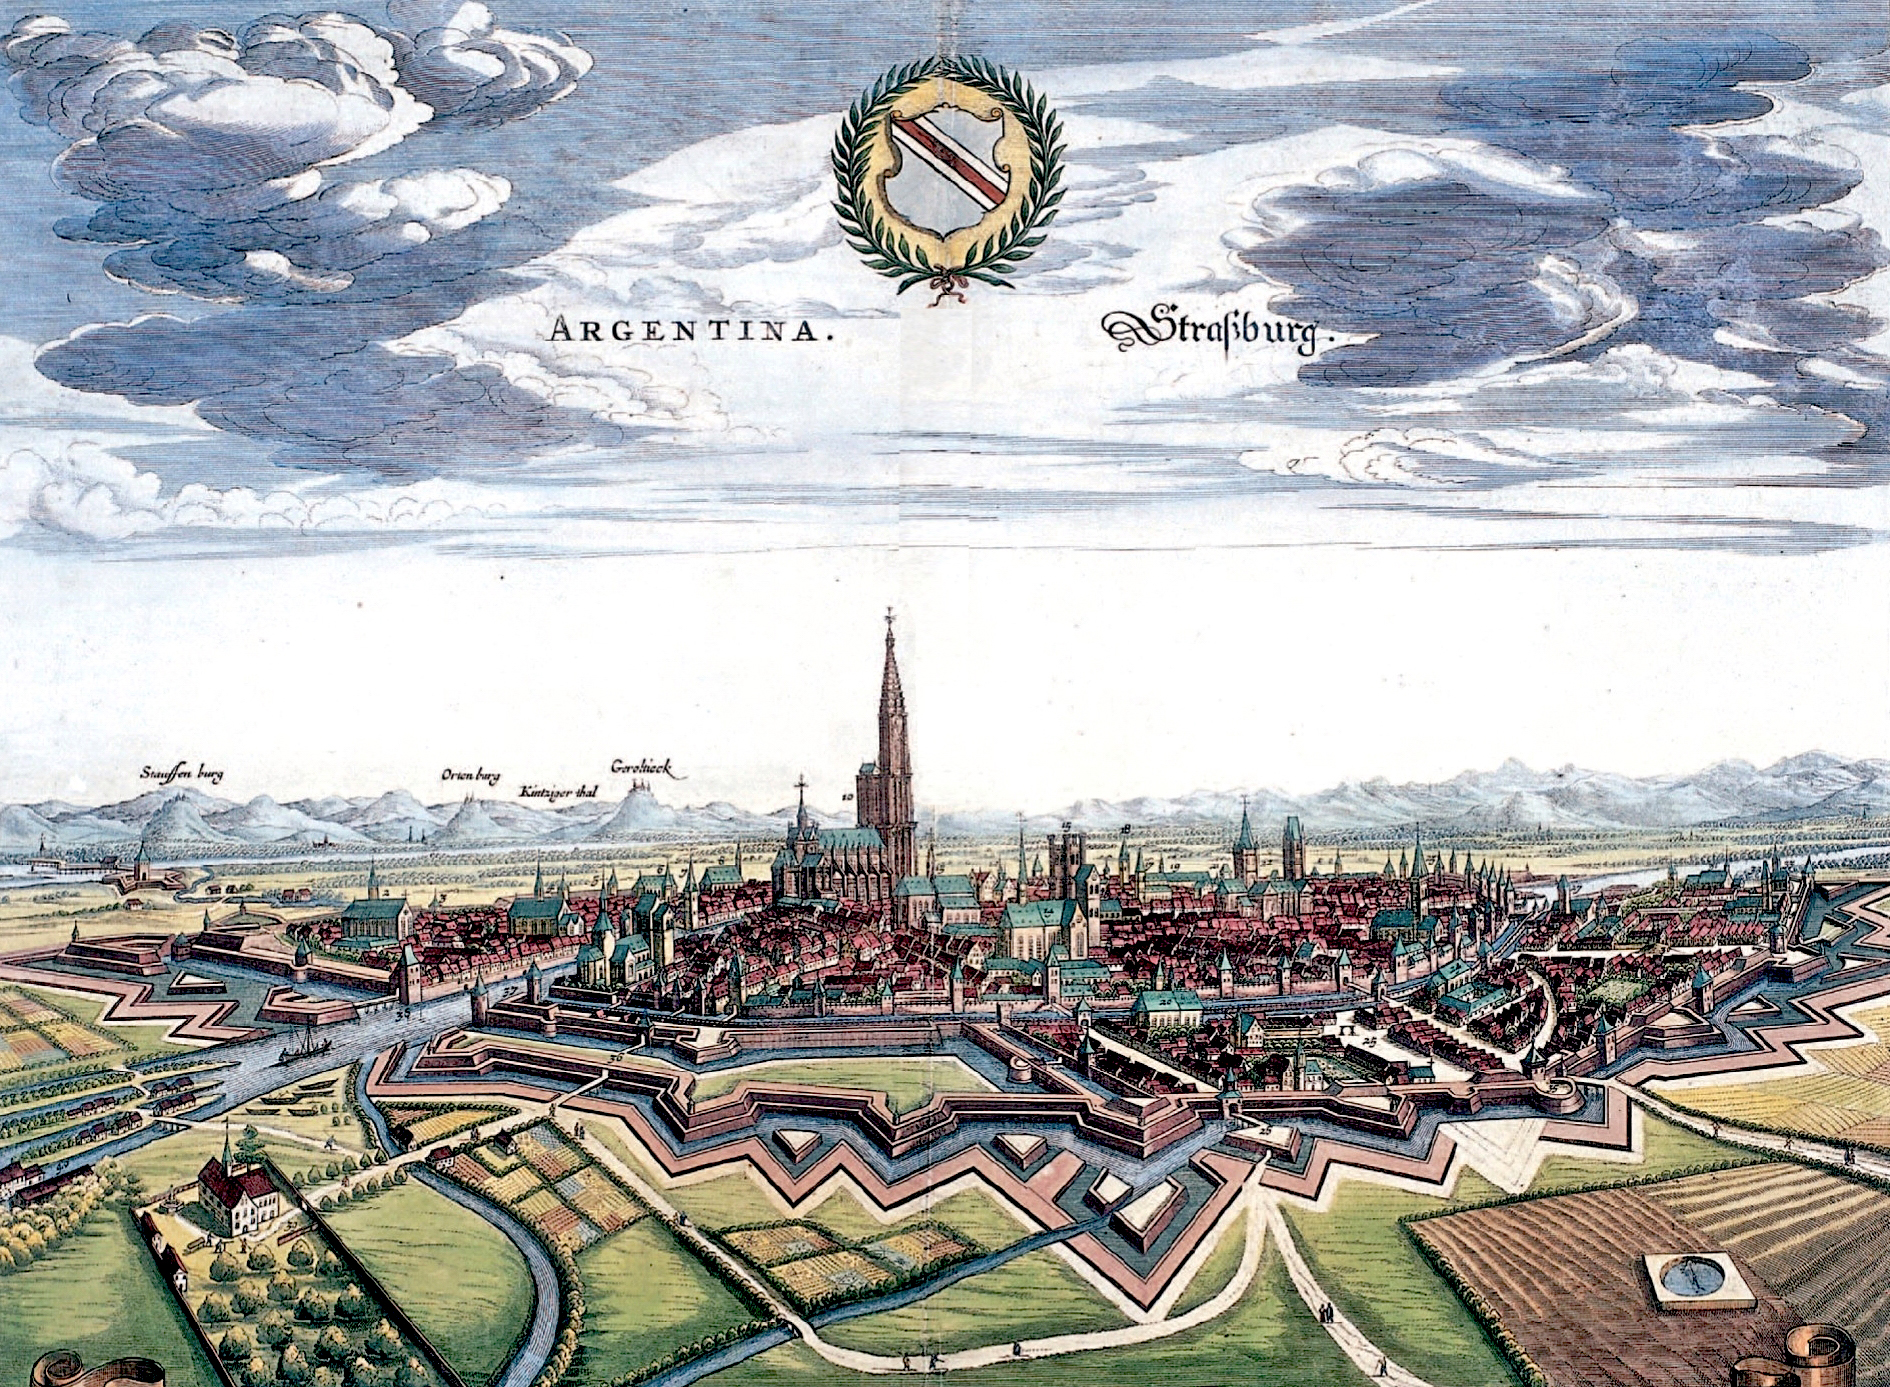 Strasbourg in 1644